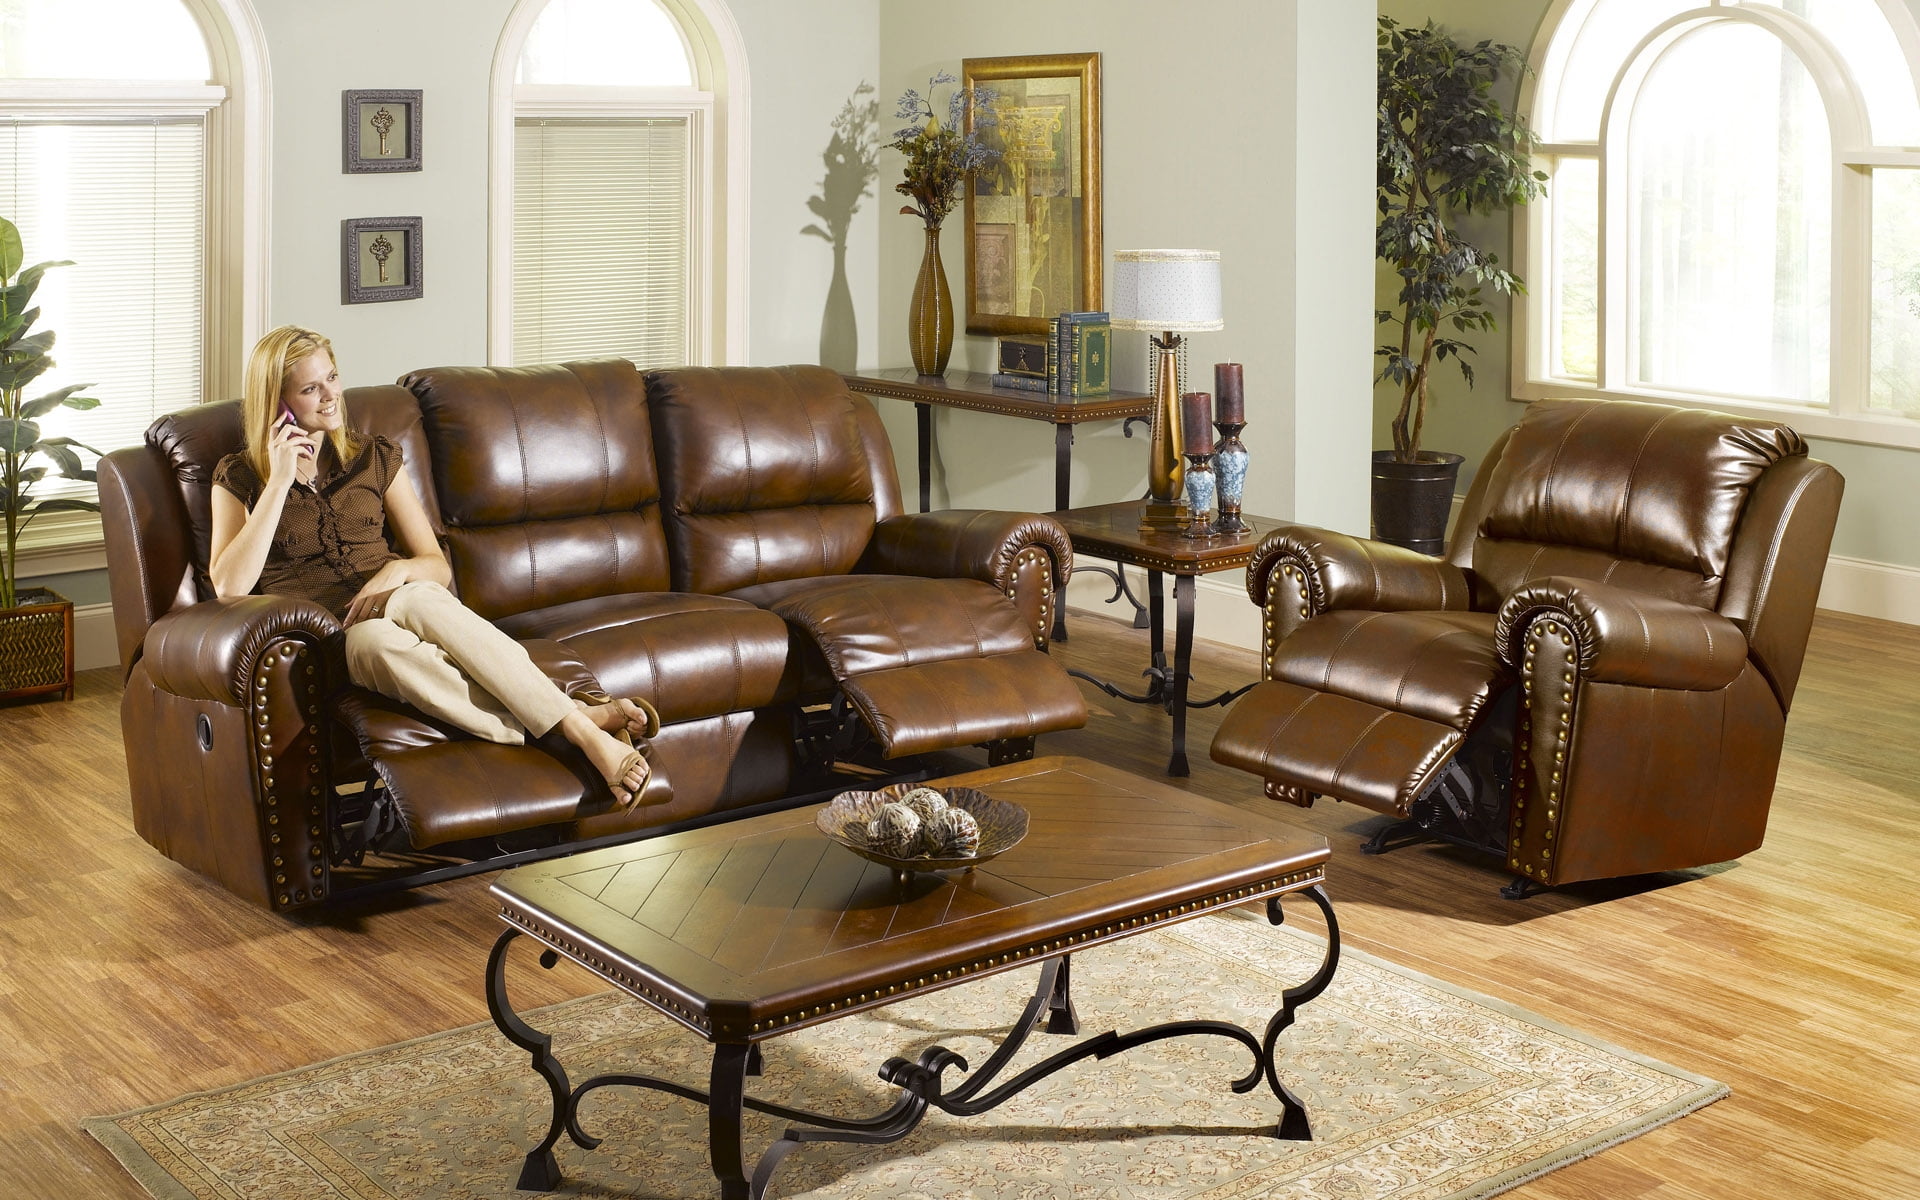 Мебель кожаные диваны. Кожаная мебель в интерьере. Кожаный диван. Кожаный диван в интерьере. Кожаная мебель в интерьере гостиной.